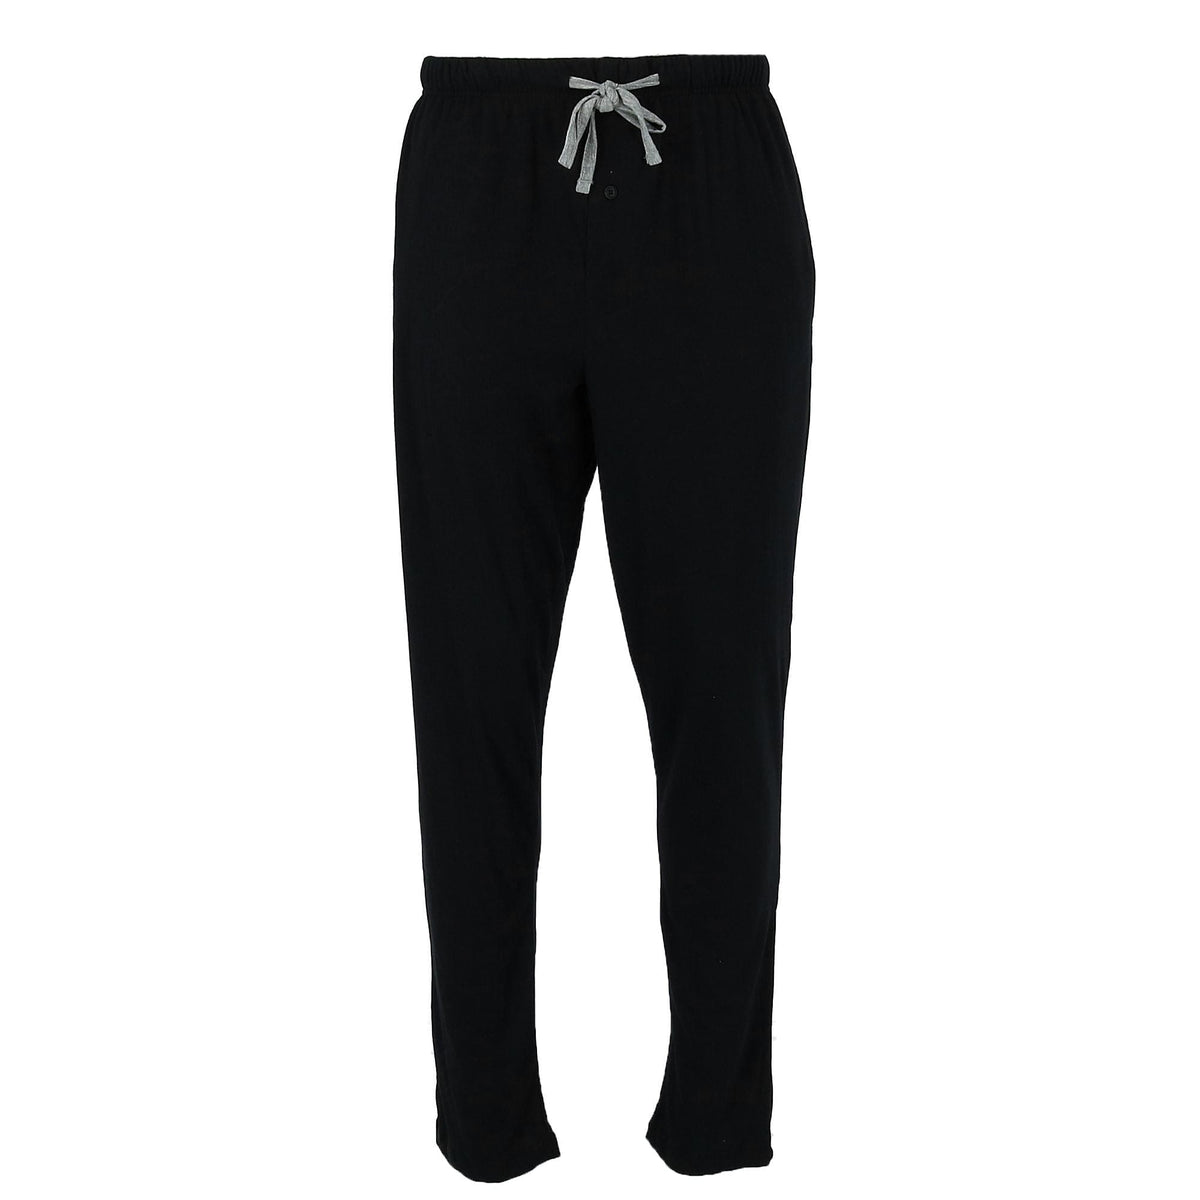 Men's X Temp Knit Lounge Pajama Pants by Hanes | Pajama Bottoms at ...